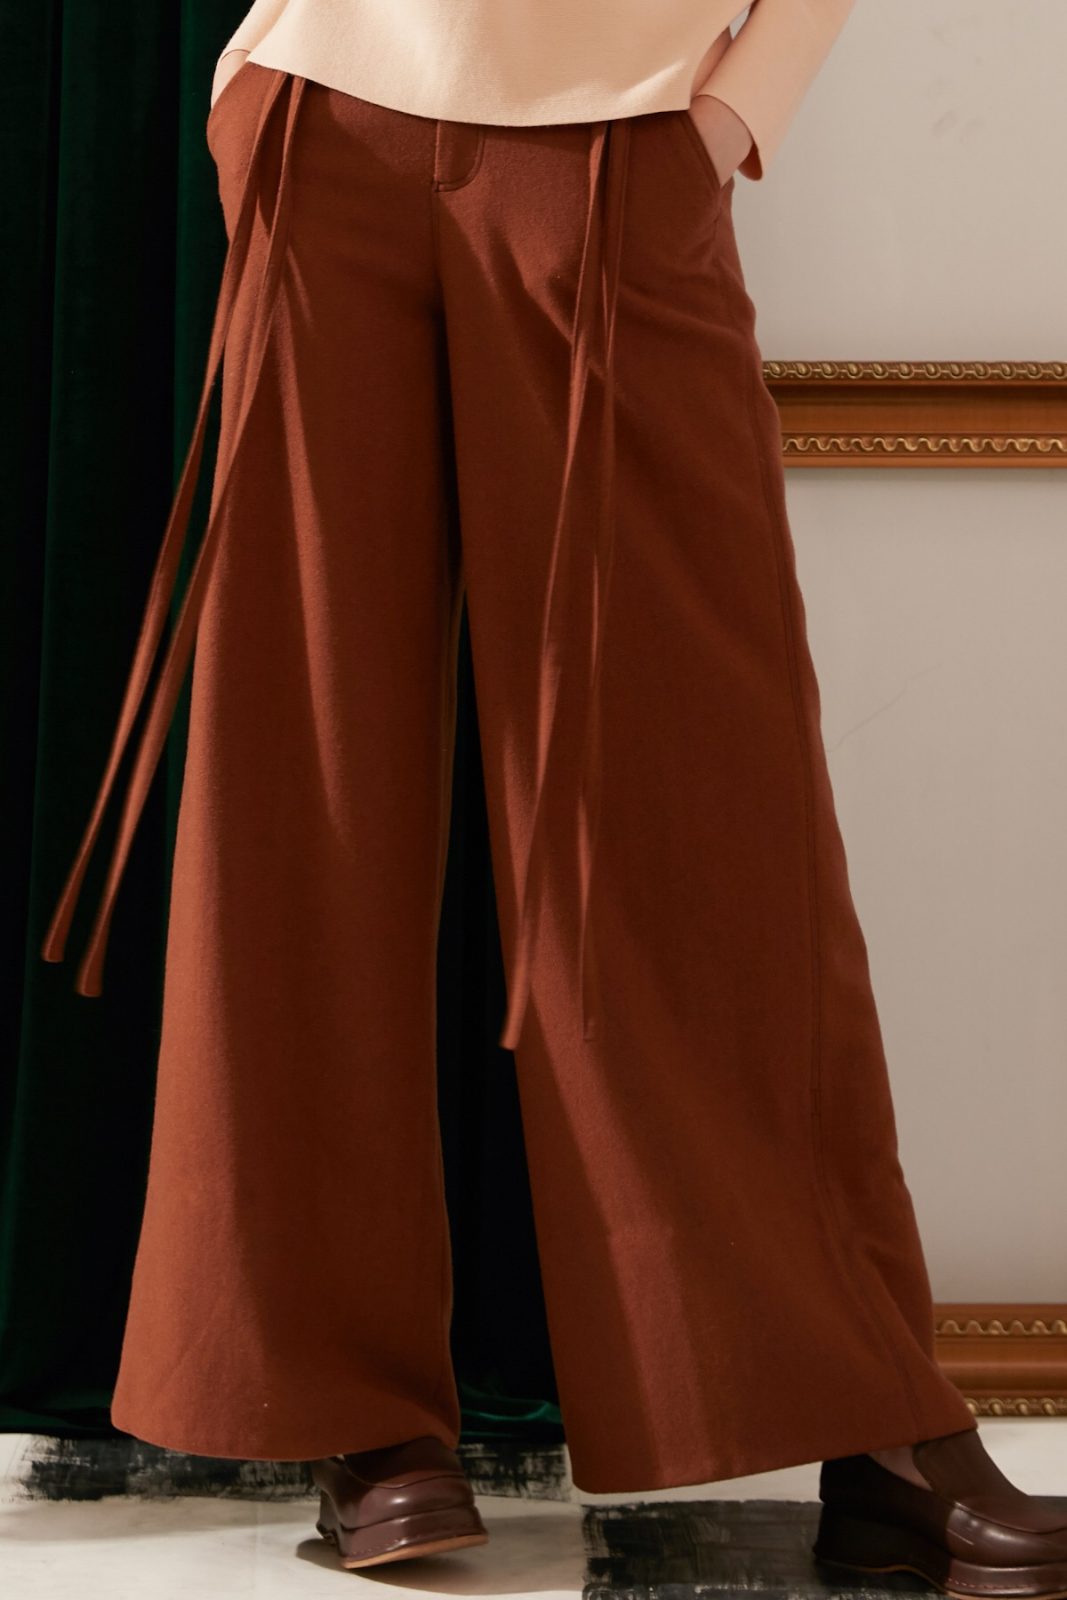 SKYE modern minimalist women fashion long wool wide legged pants with tie belt brown 7